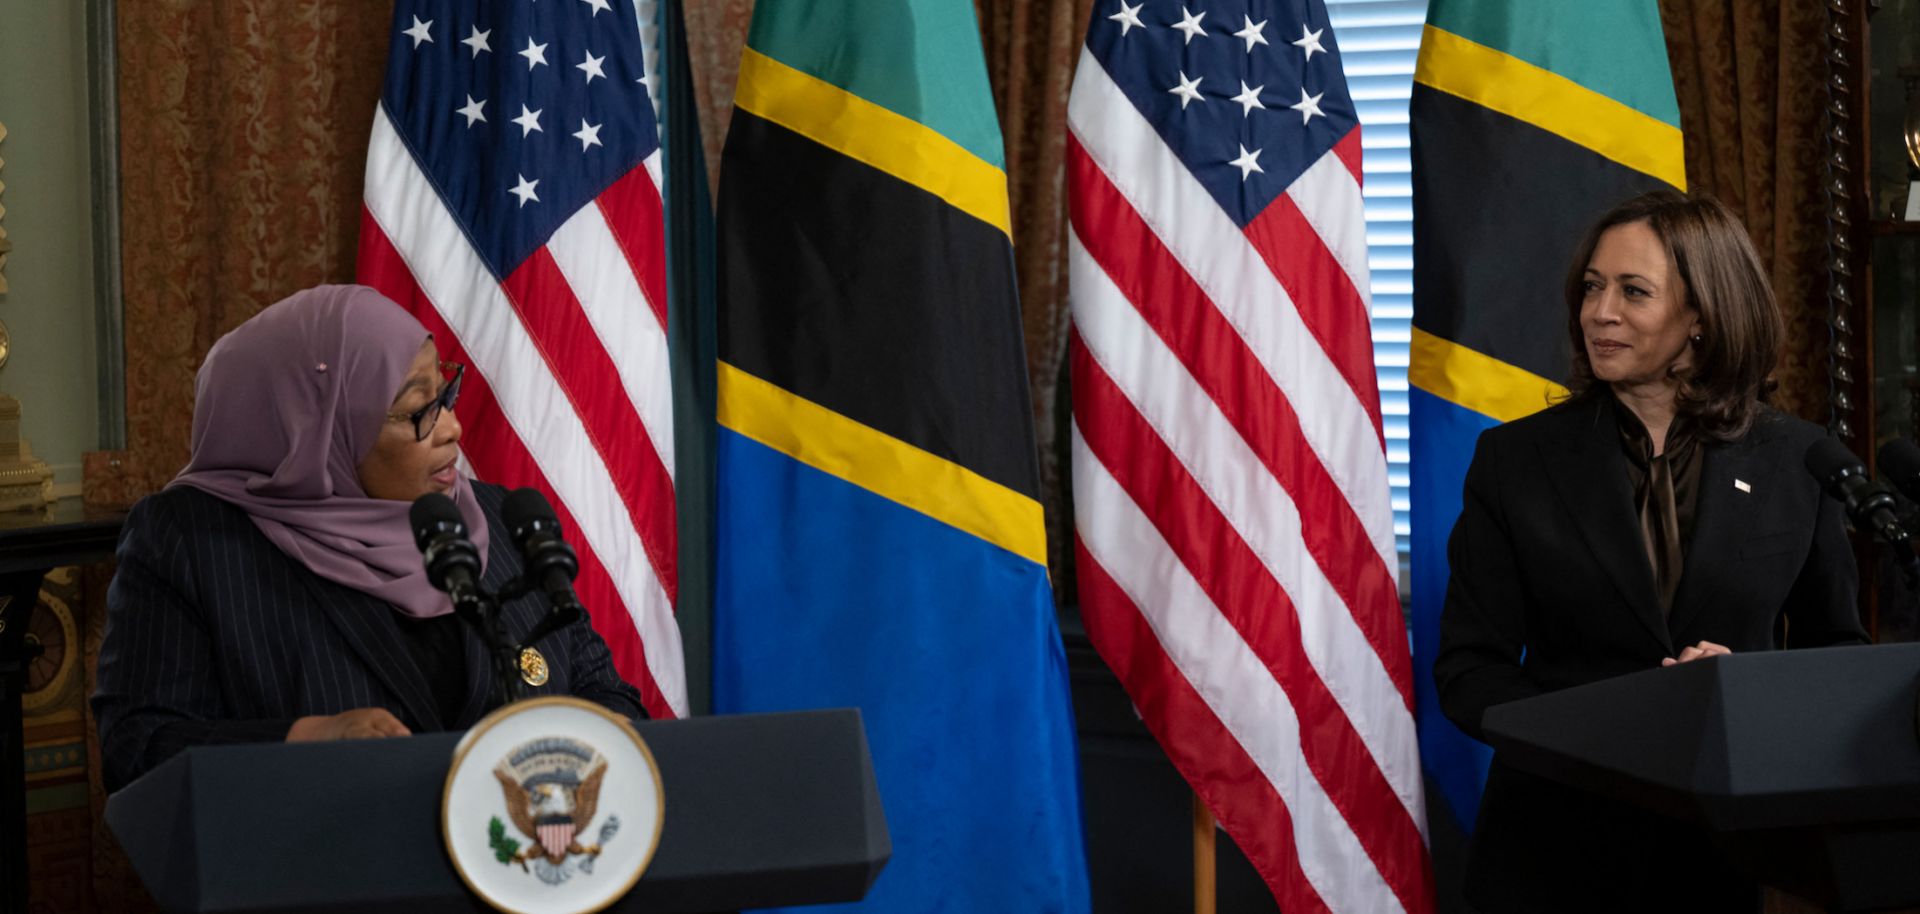 Le vice-président américain Kamala Harris écoute la présidente tanzanienne Samia Suluhu Hassan faire une déclaration à la presse avant une réunion dans le bâtiment du bureau exécutif d'Eisenhower le 15 avril à Washington, DC